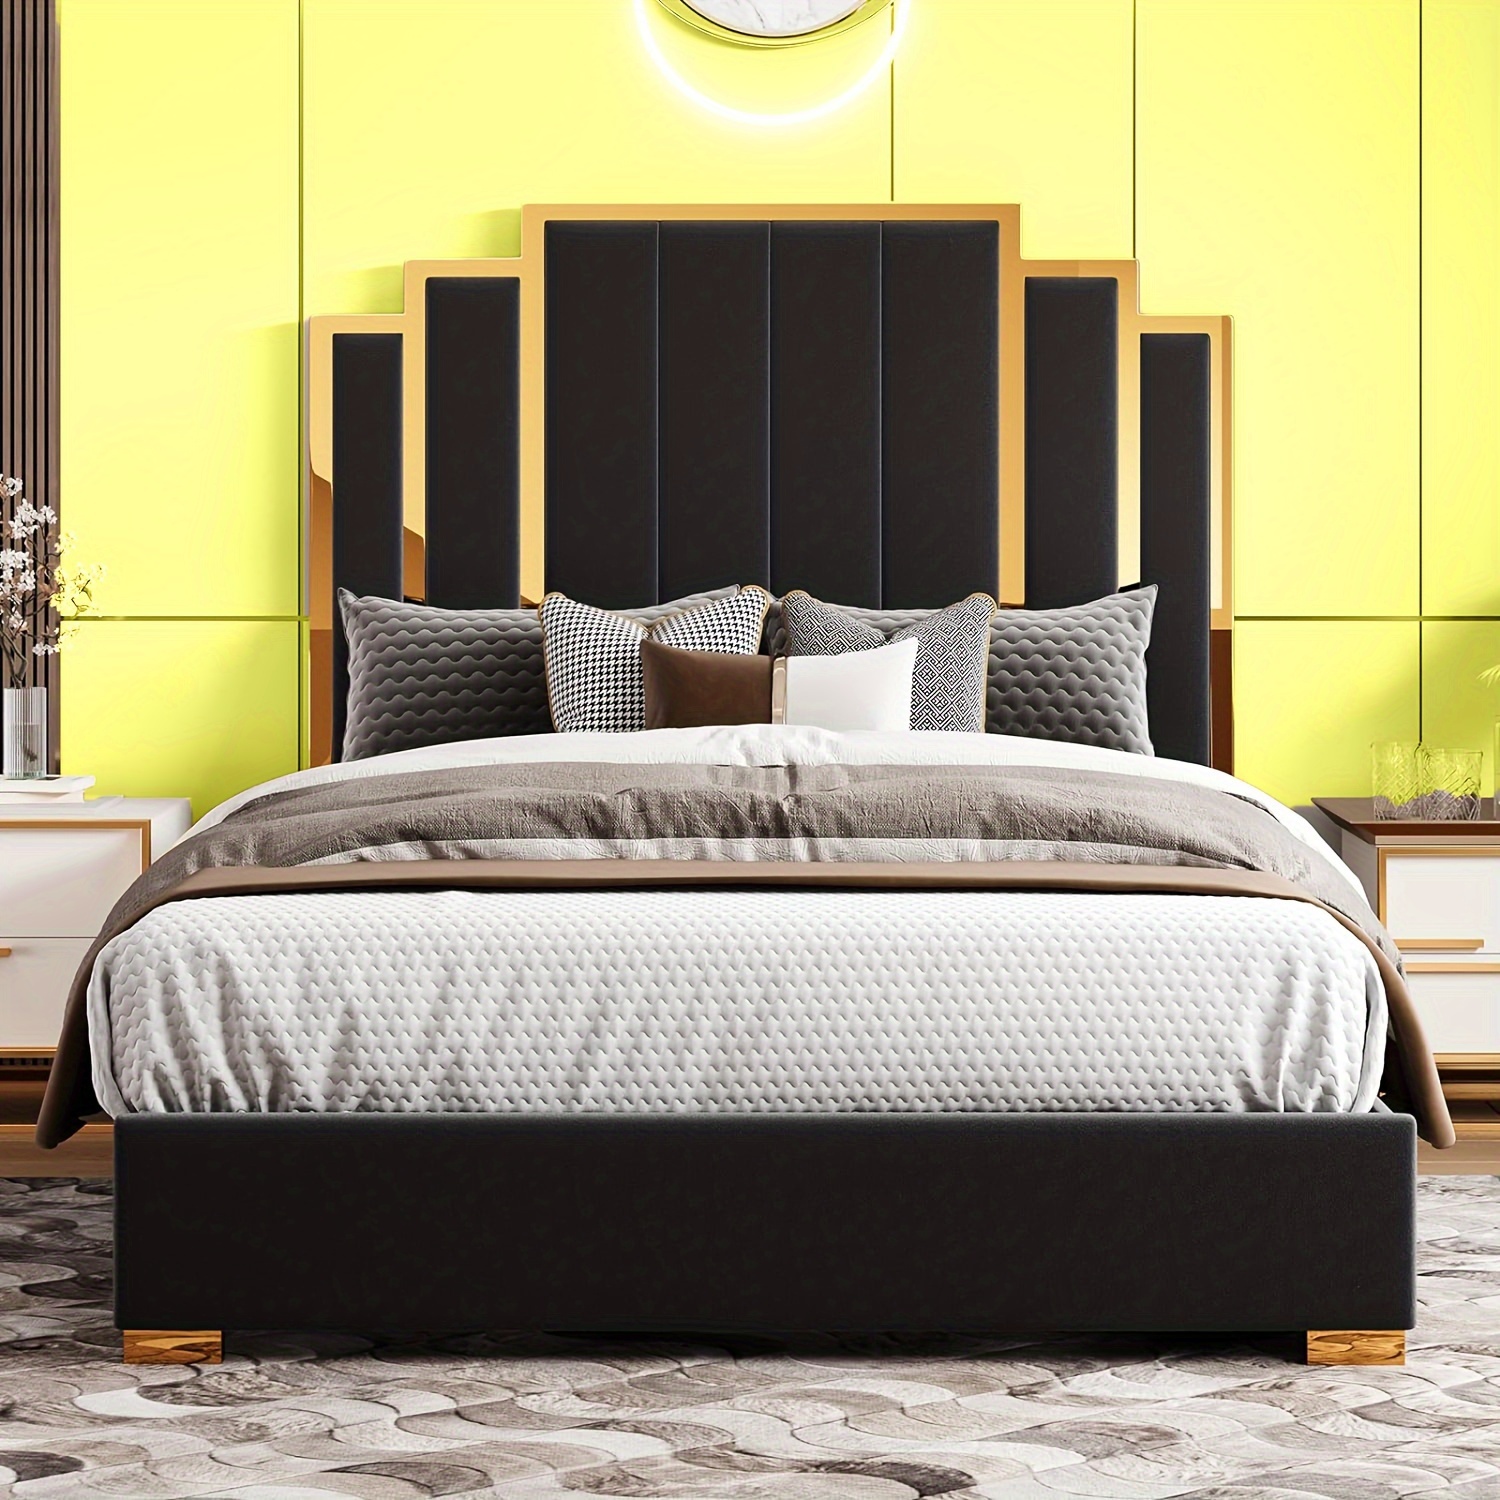 

Papajet Golden Trimmed Upholstered Bed Frame With 61-inch Headboard - Modern Platform Style